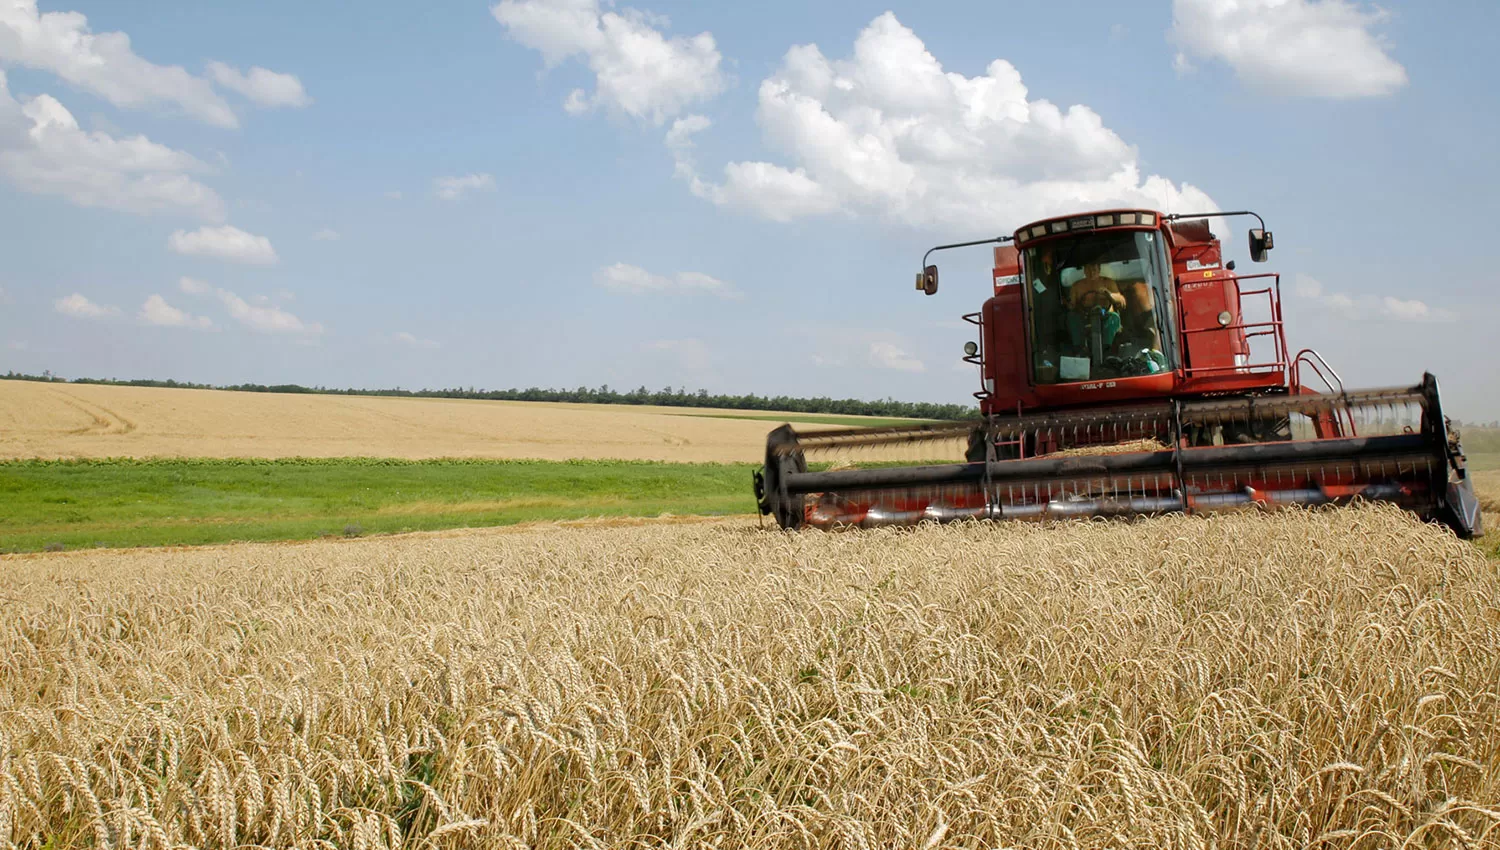 POR OTRAS VÍAS. Las autoridades ucranianas habían estimado una producción de APK-Inform explicó la semana pasada que las exportaciones de granos de alrededor de 44 millones de toneladas para la temporada.